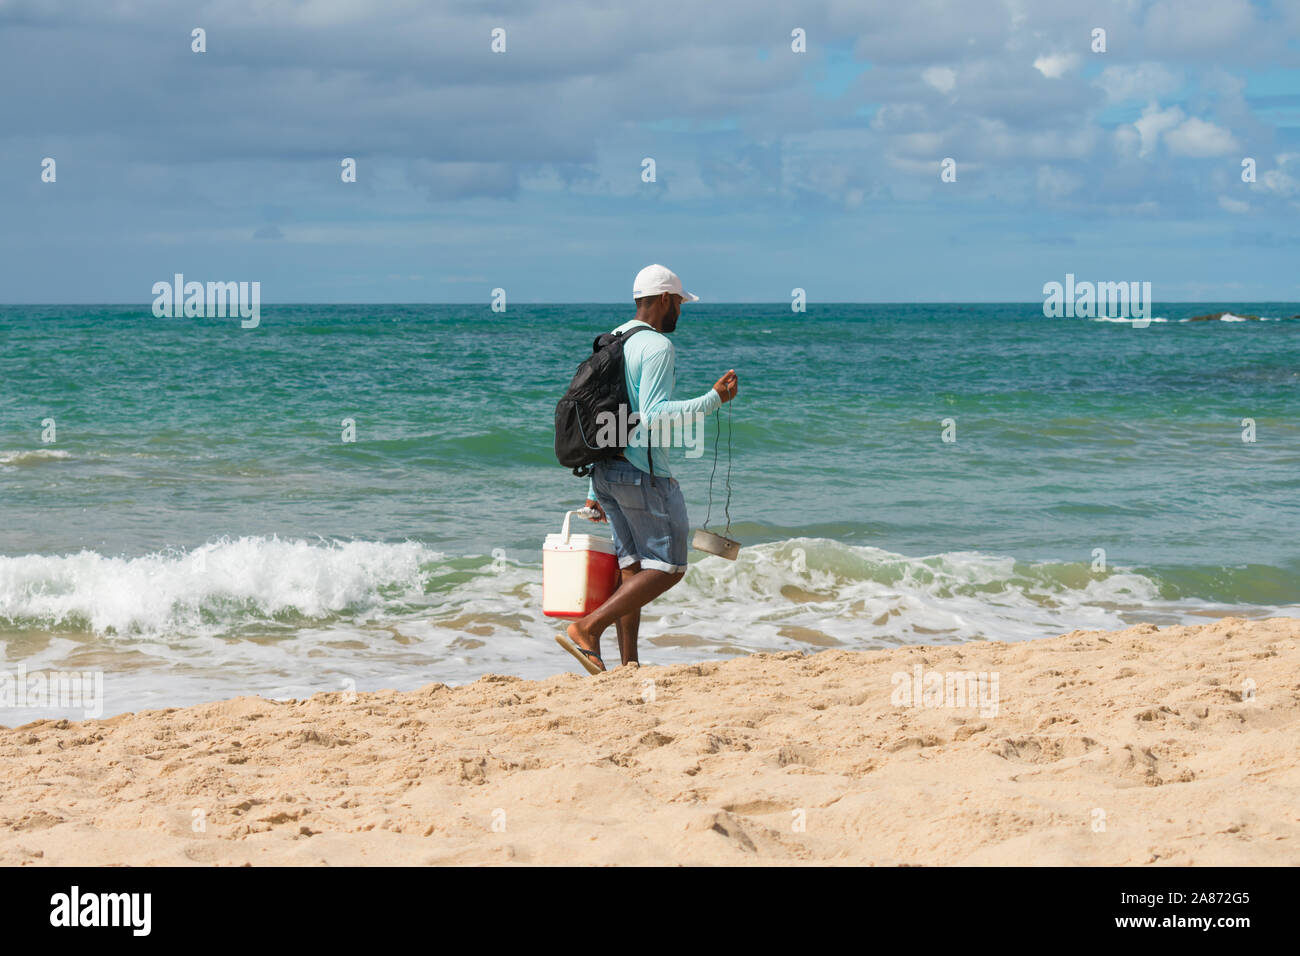 Salvador, Brasile - Circa nel settembre 2019: l'uomo con un braciere vendere queijo coalho (formaggio alla griglia) sulla spiaggia di Itapua - popolare beach snack in Salvador Foto Stock